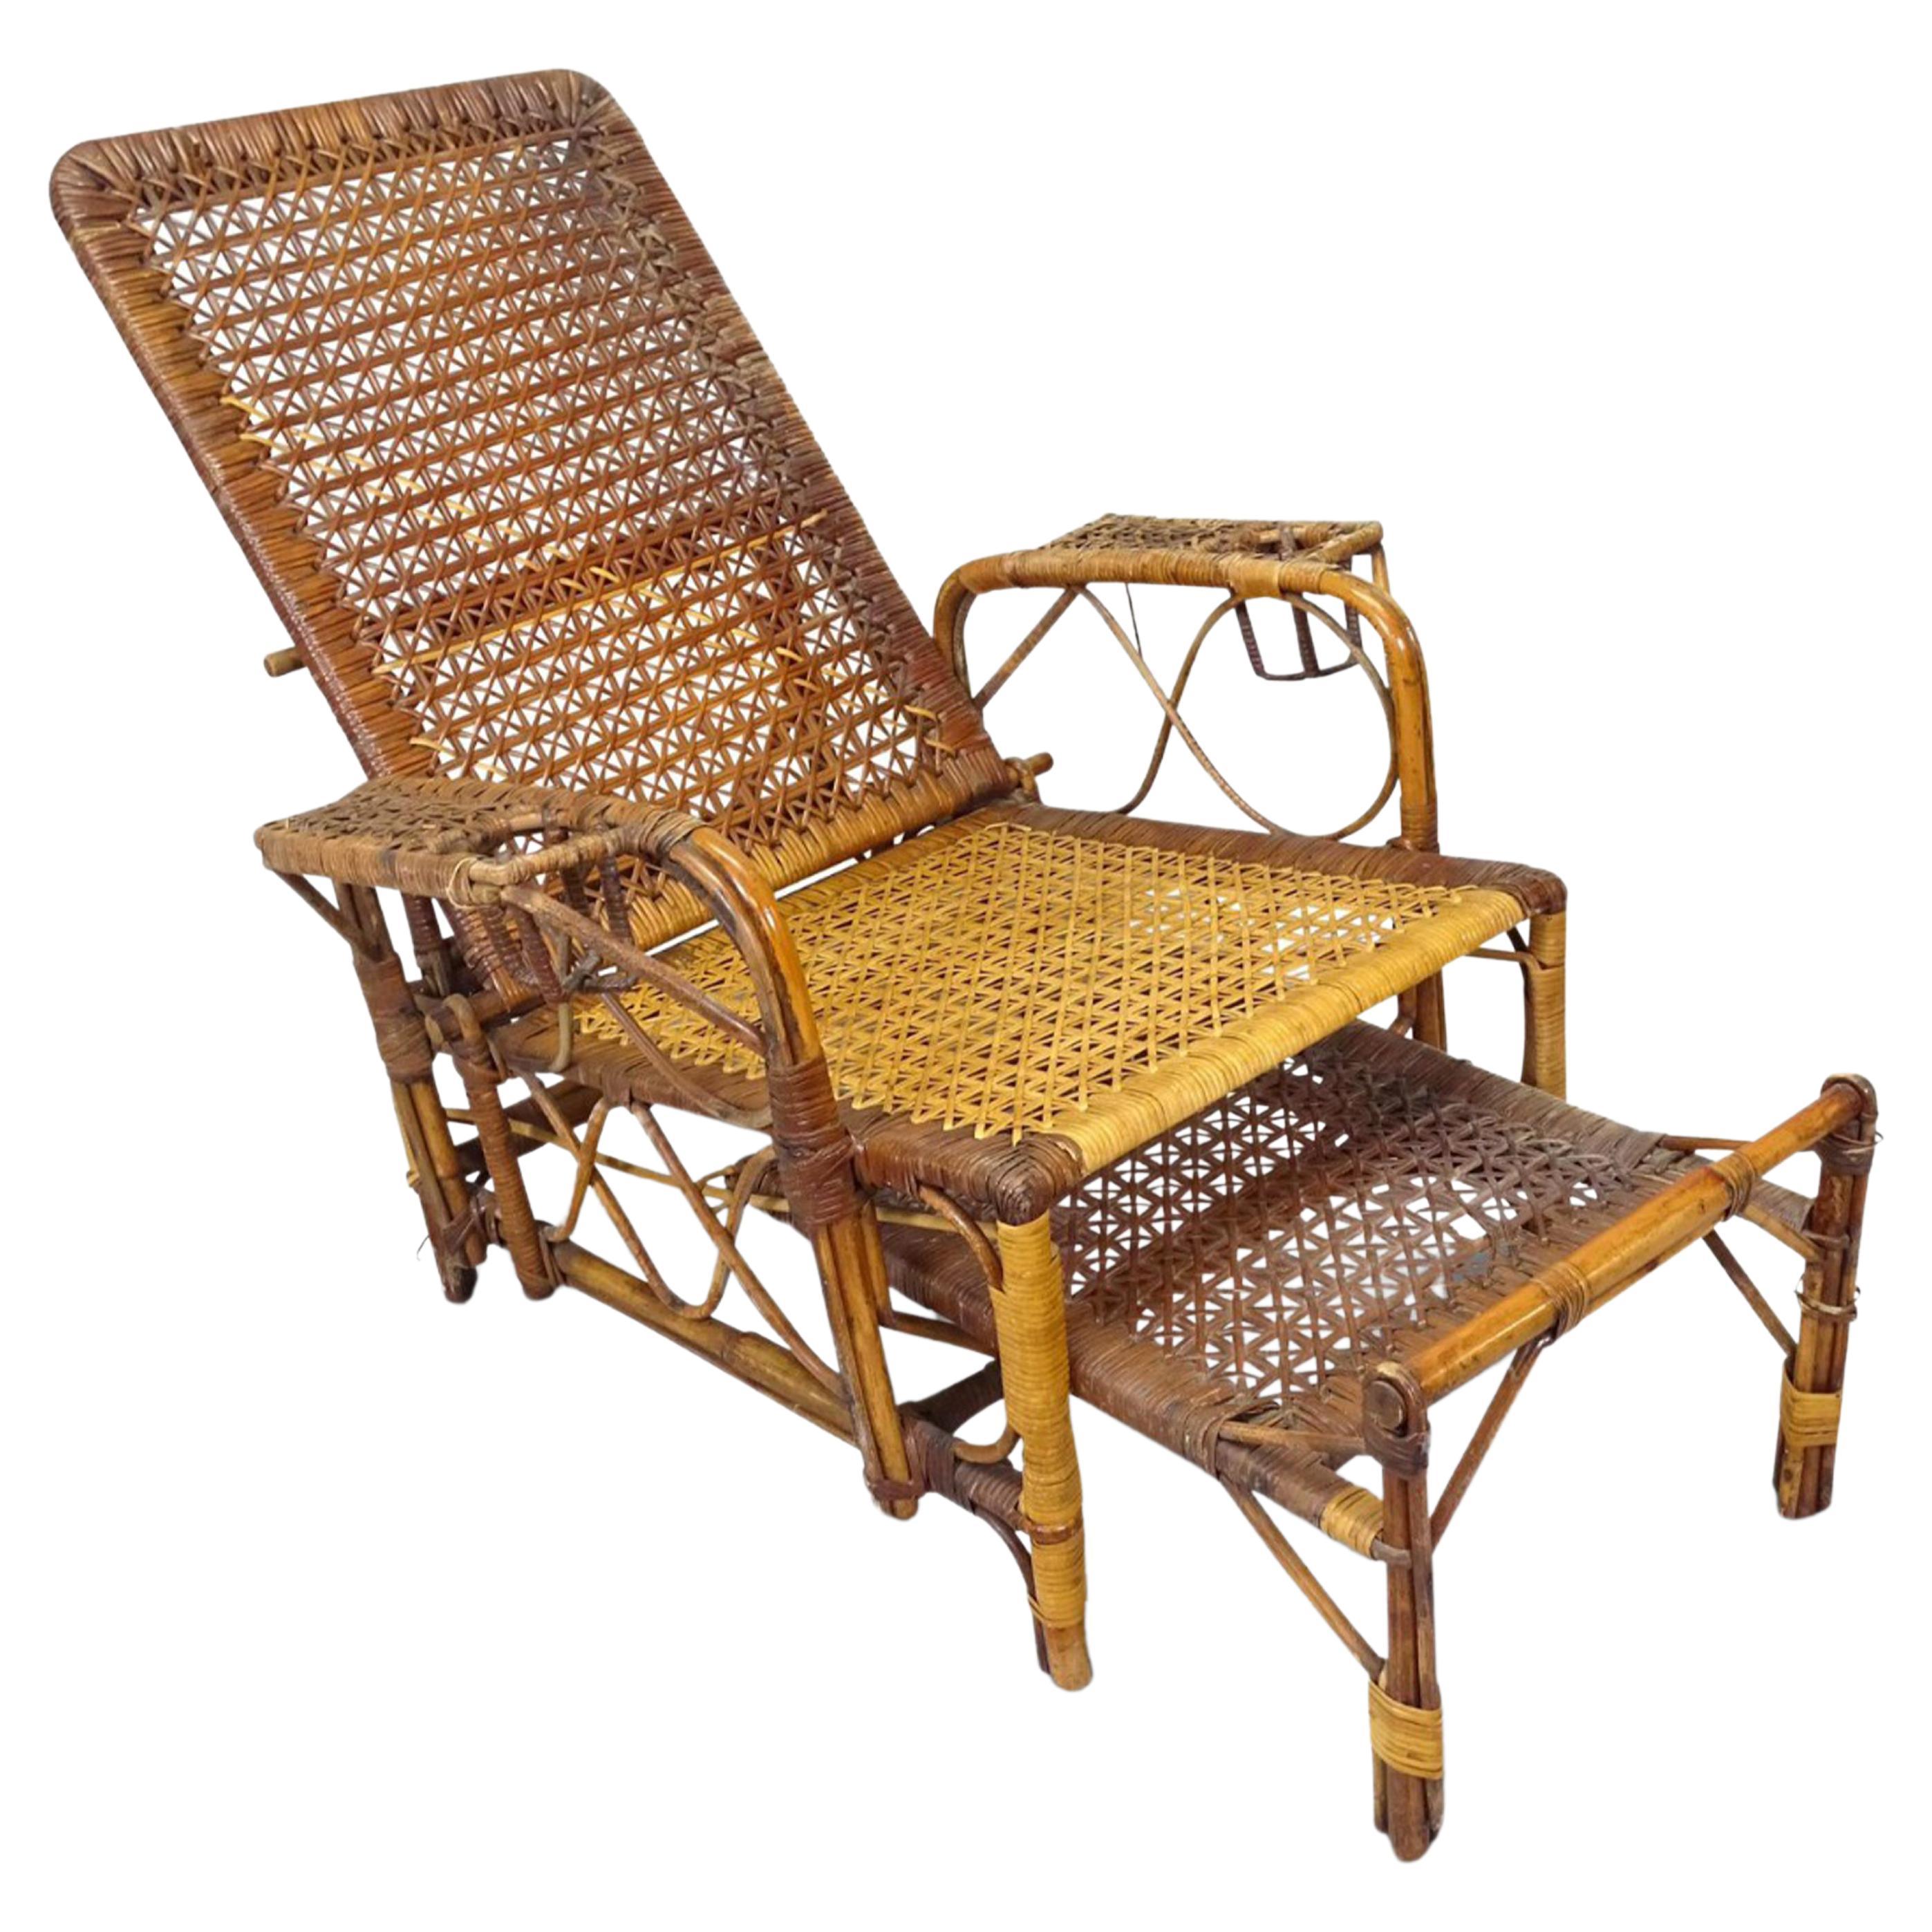 Britischer viktorianischer Dampfer-Sessel aus Bambus und Schilfrohr im Kolonialstil